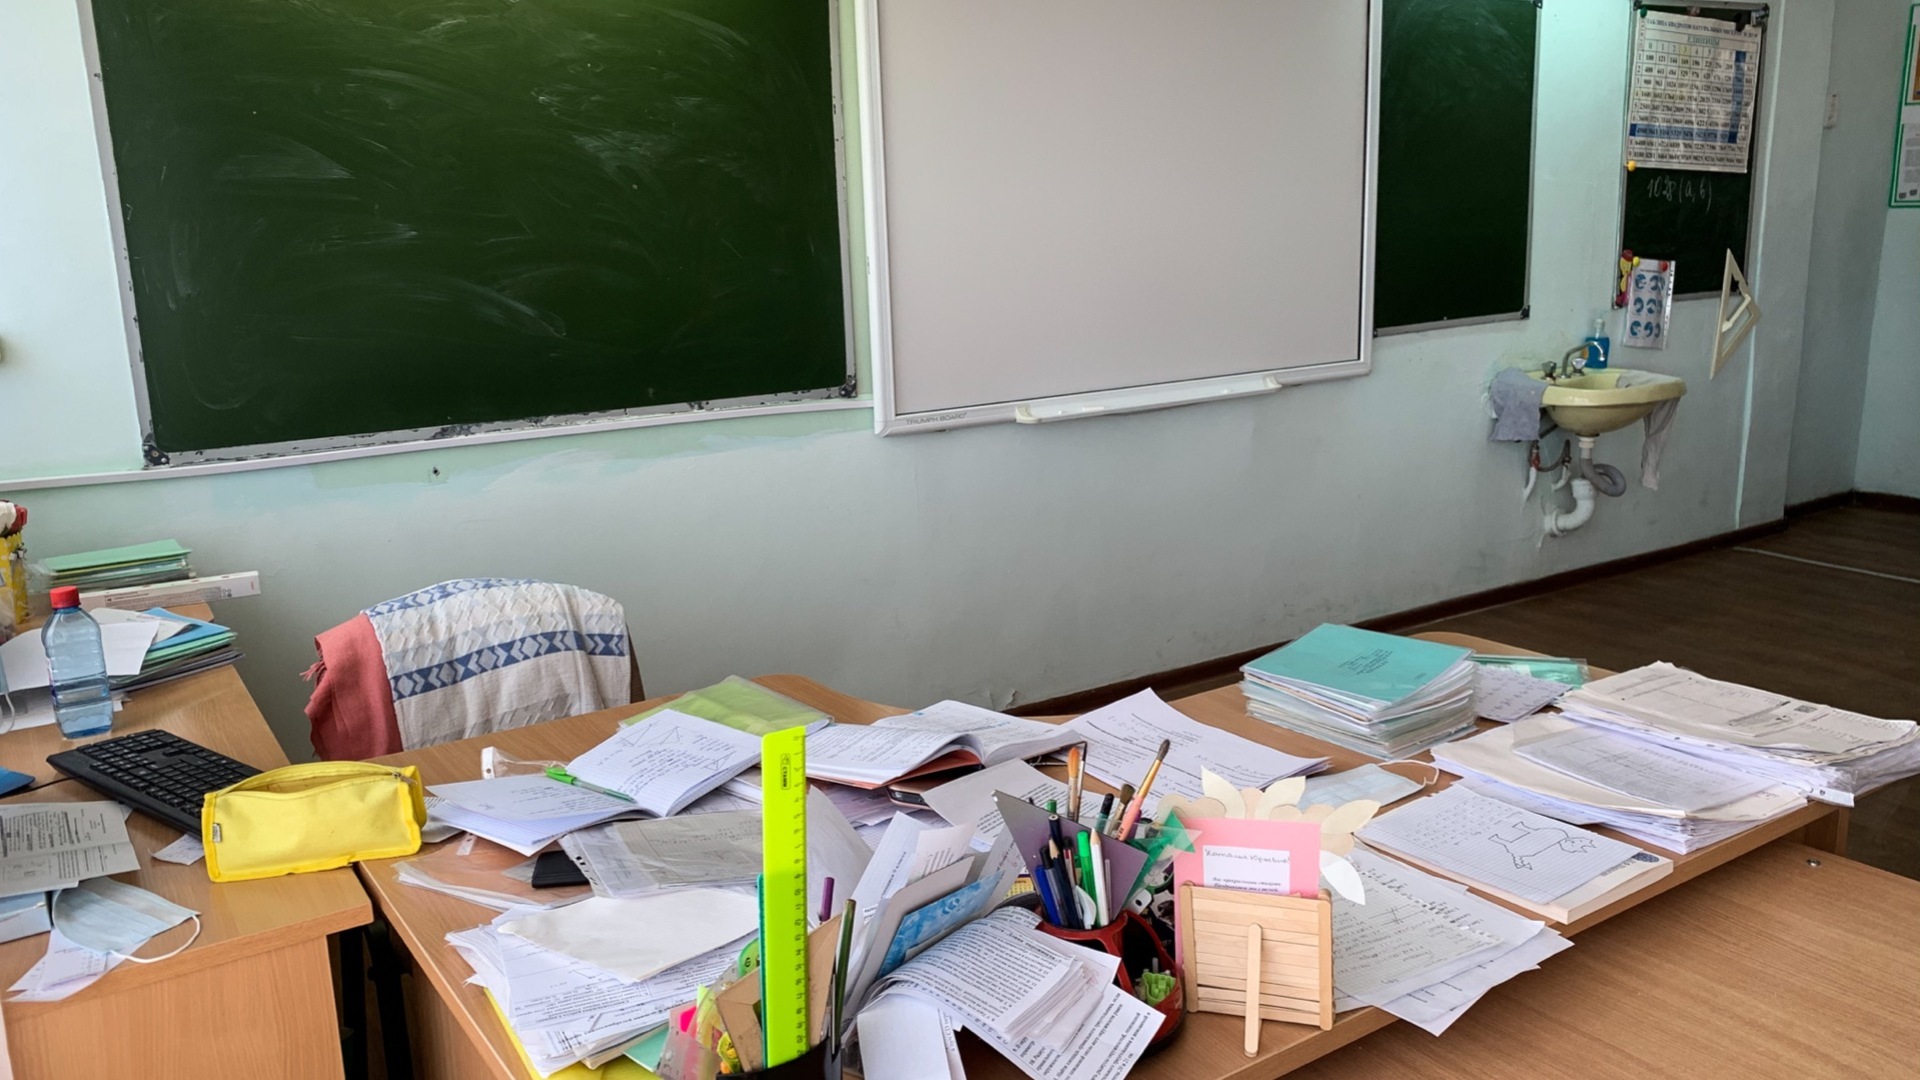 От трех до 100%: сколько учителей не хватает российским школам